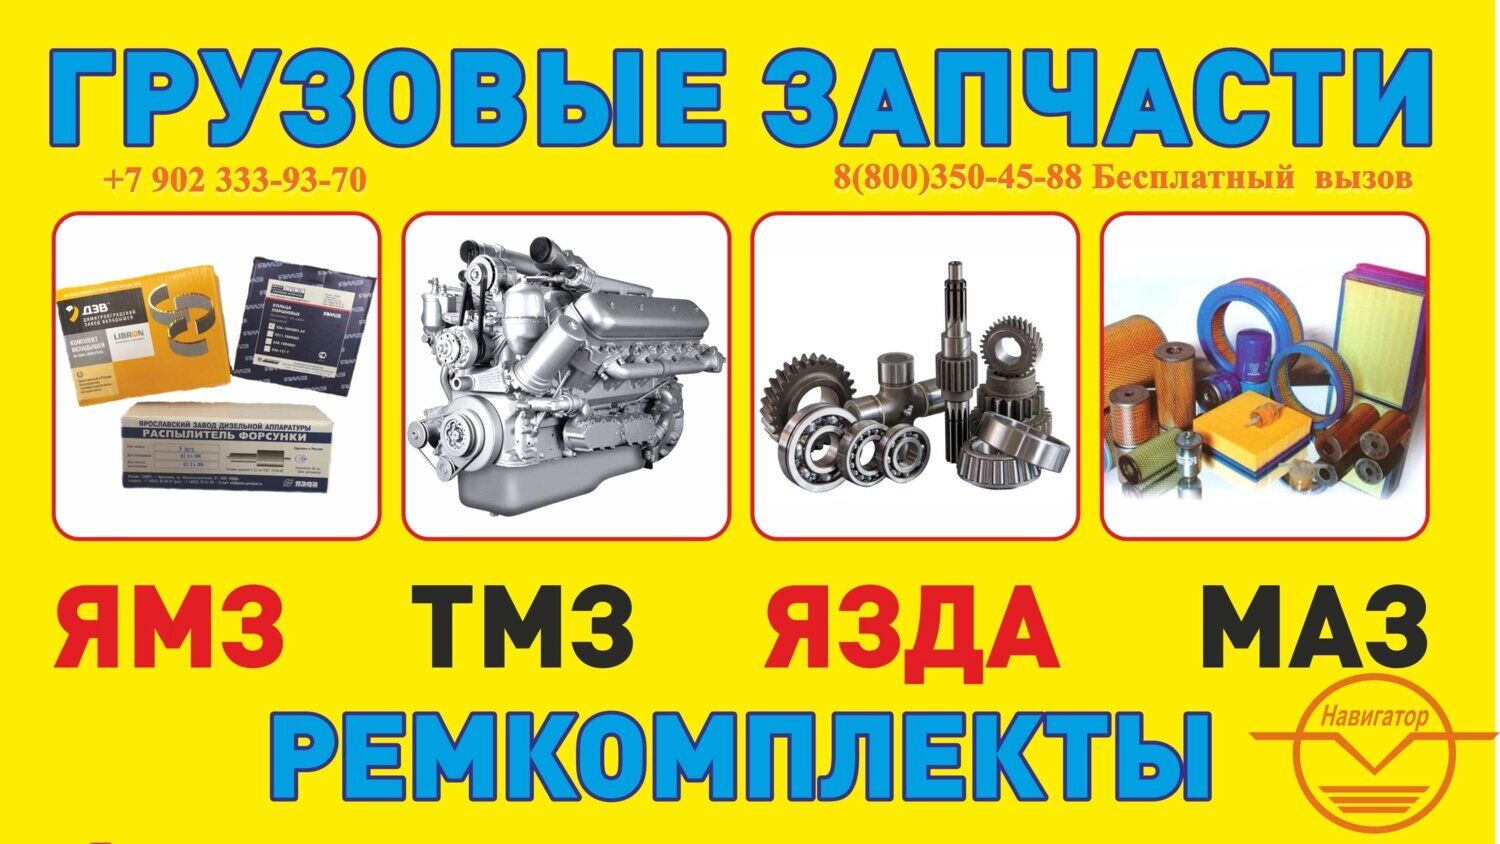 Блок радиаторов для автогрейдера ДЗ-98, А-98М: Б 238К.1301.0000 Композит